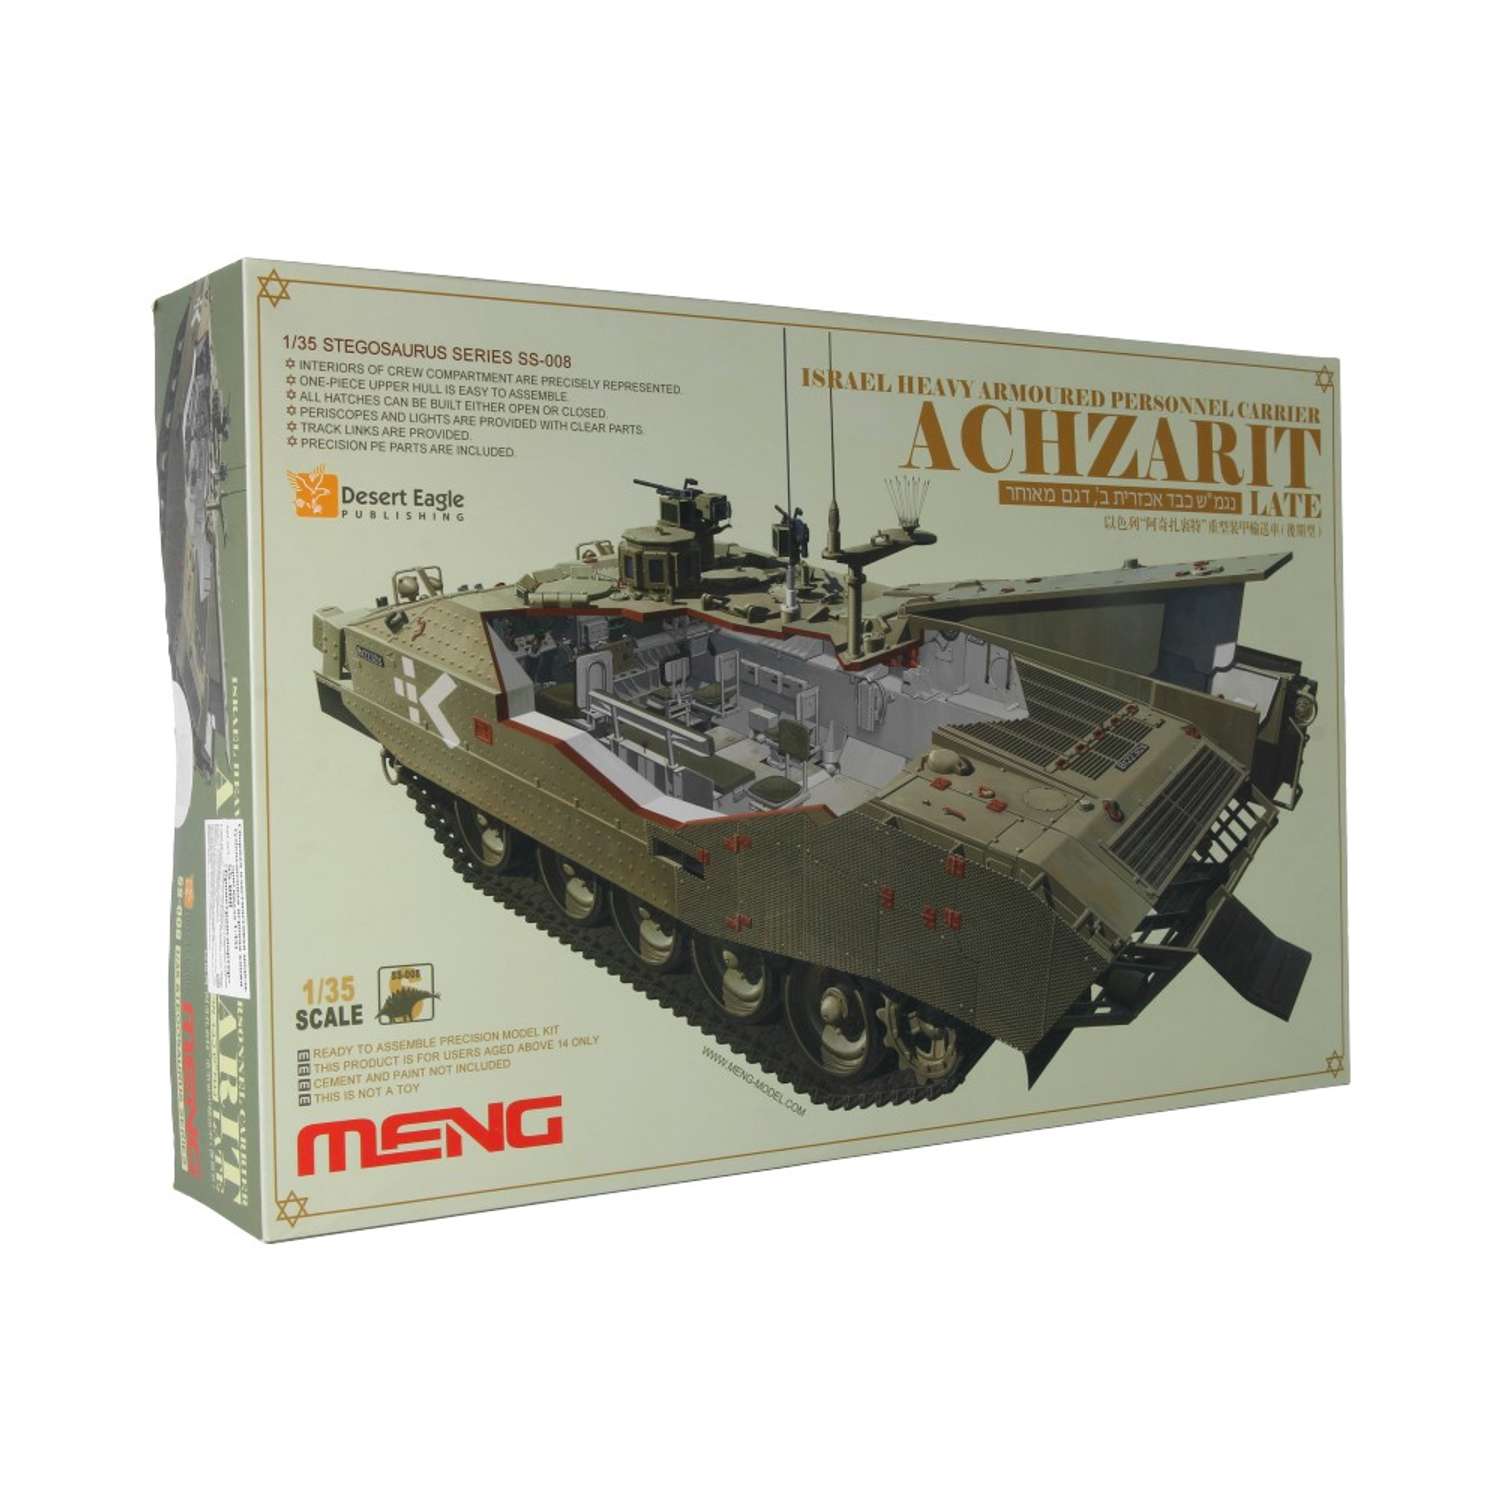 Сборная модель MENG SS-008 бронетранспортер Achzarit 1/35 26490922732 - фото 1